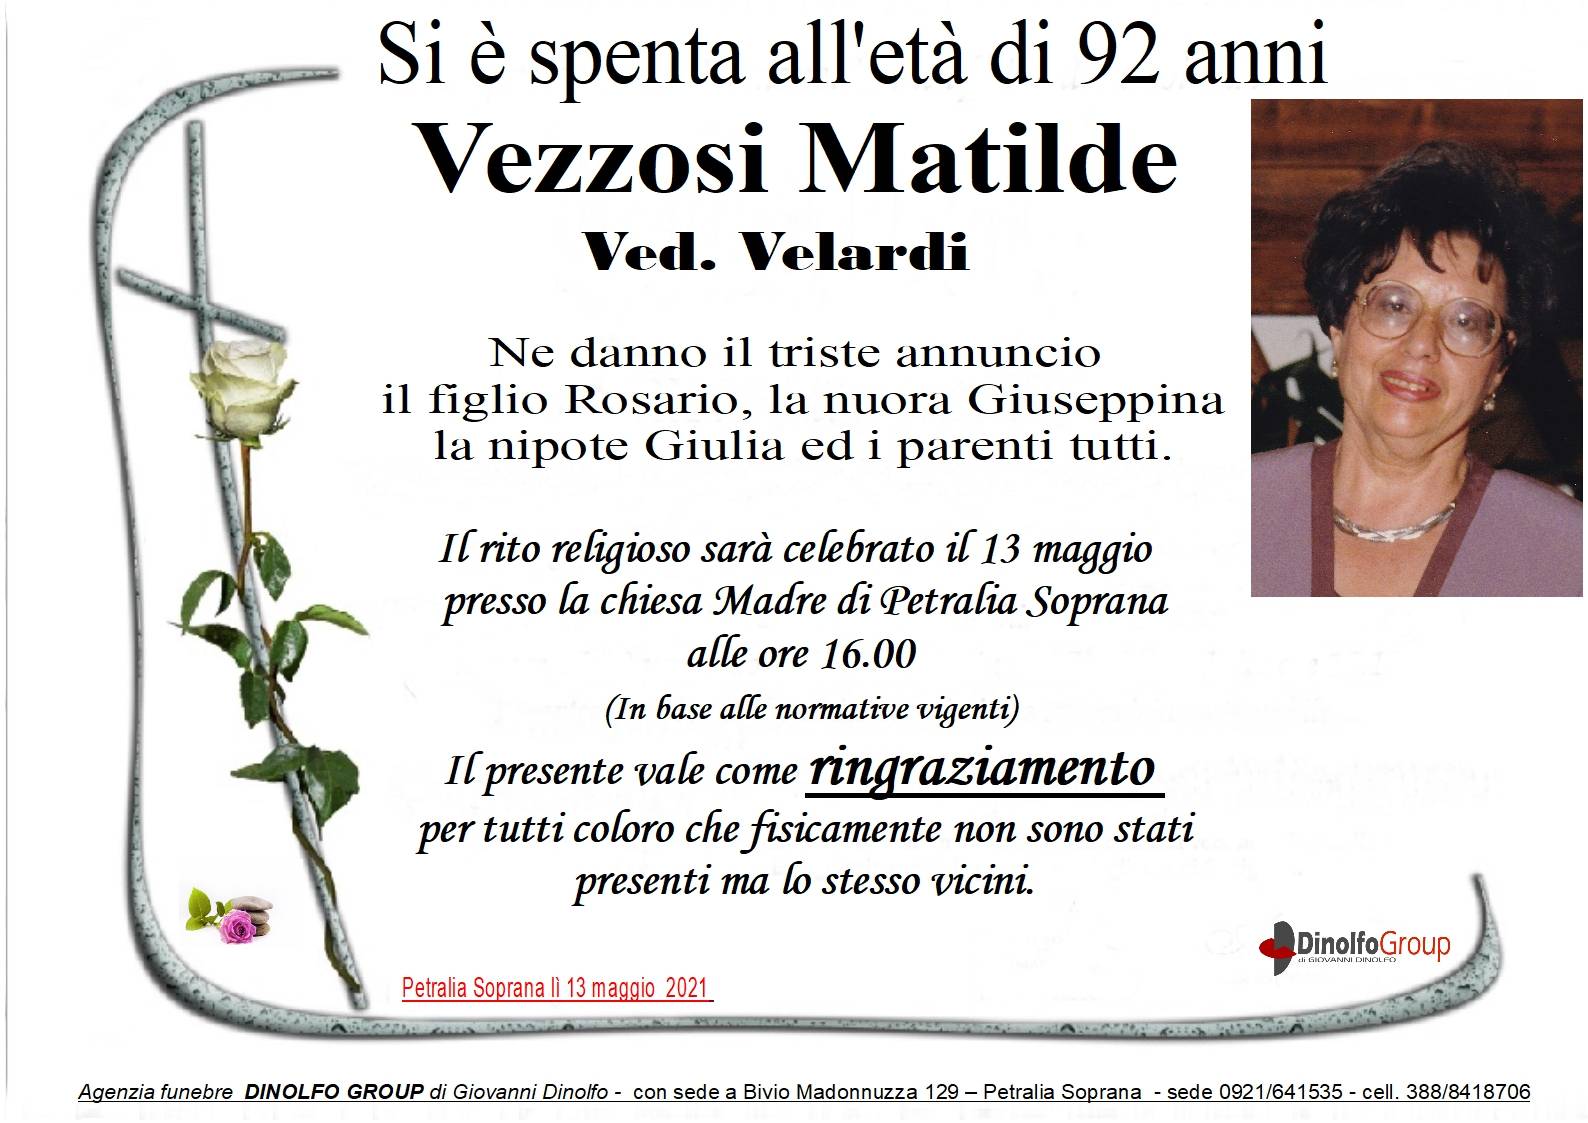 Matilde Vezzosi